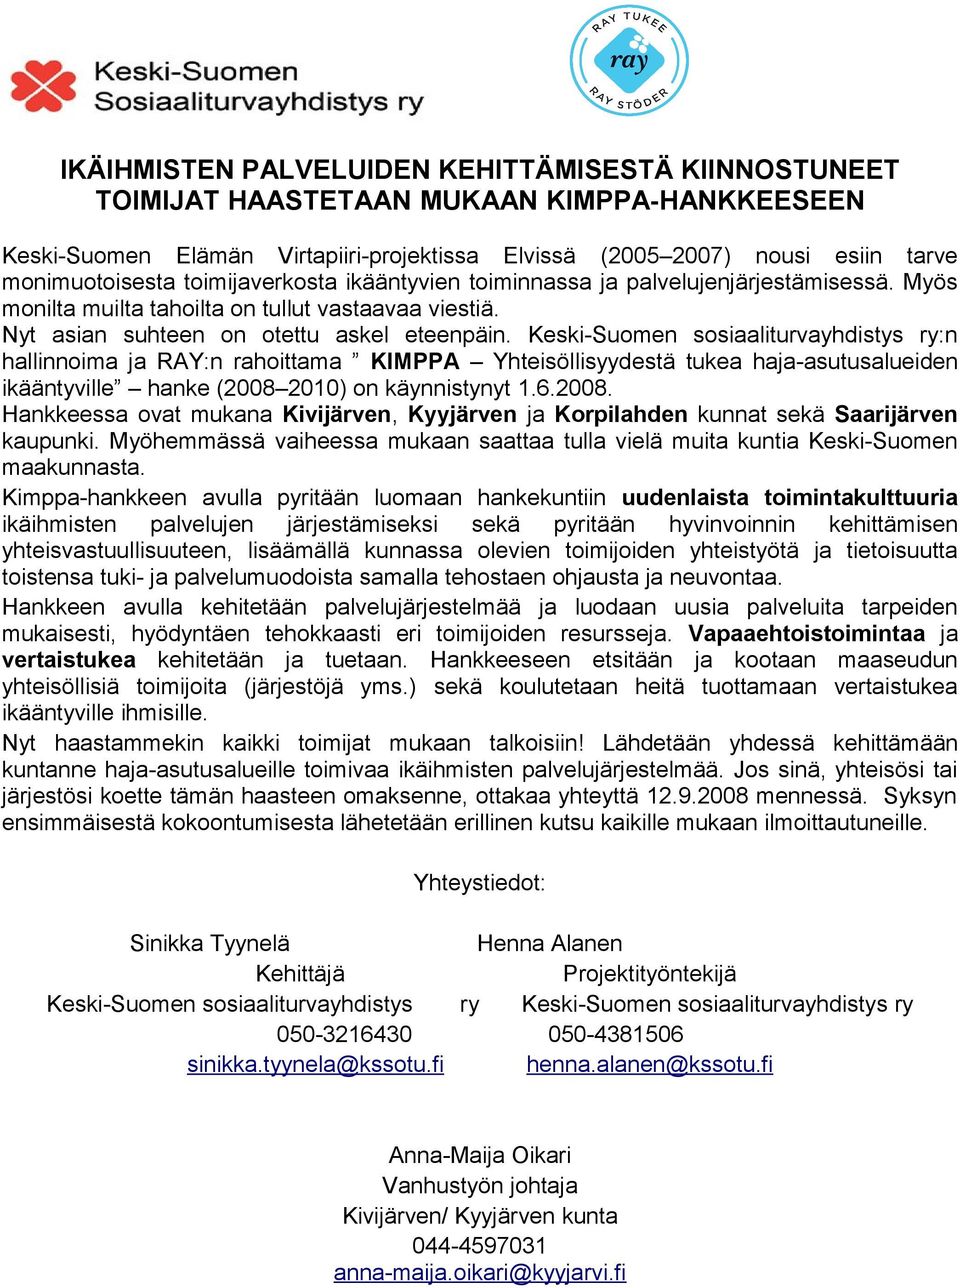 Keski-Suomen sosiaaliturvayhdistys ry:n hallinnoima ja RAY:n rahoittama KIMPPA Yhteisöllisyydestä tukea haja-asutusalueiden ikääntyville hanke (2008 